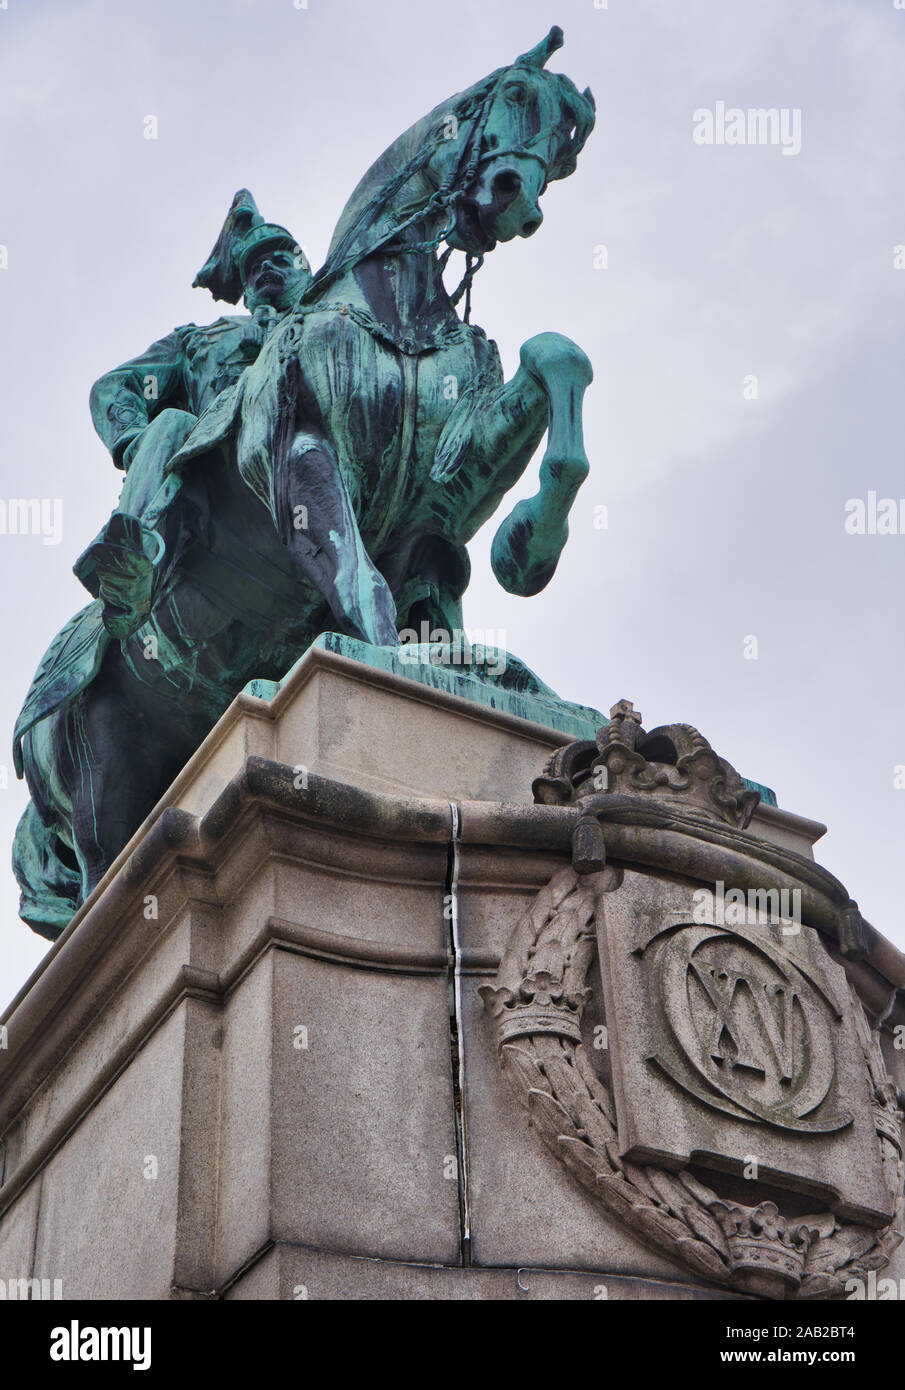 Statua equestre in bronzo di re svedese Karl XV, Djurgarden, Stoccolma, Svezia Foto Stock